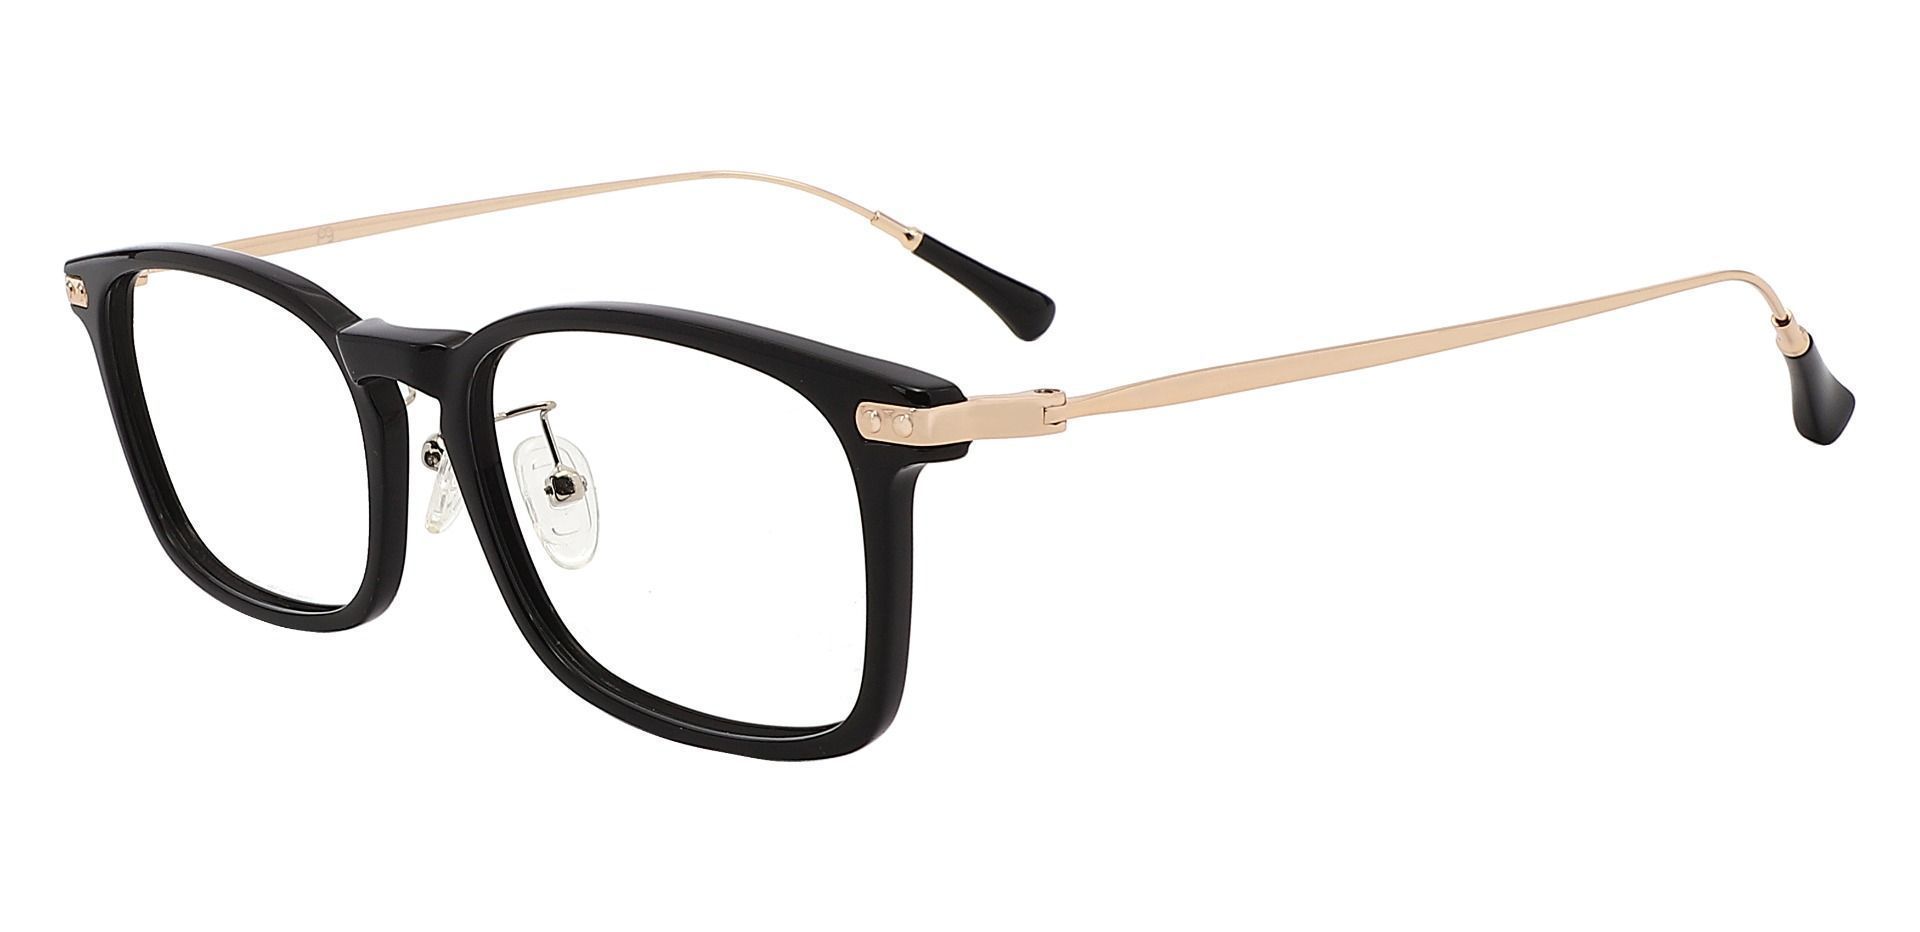 Barron Rectangle Eyeglasses Frame - Black